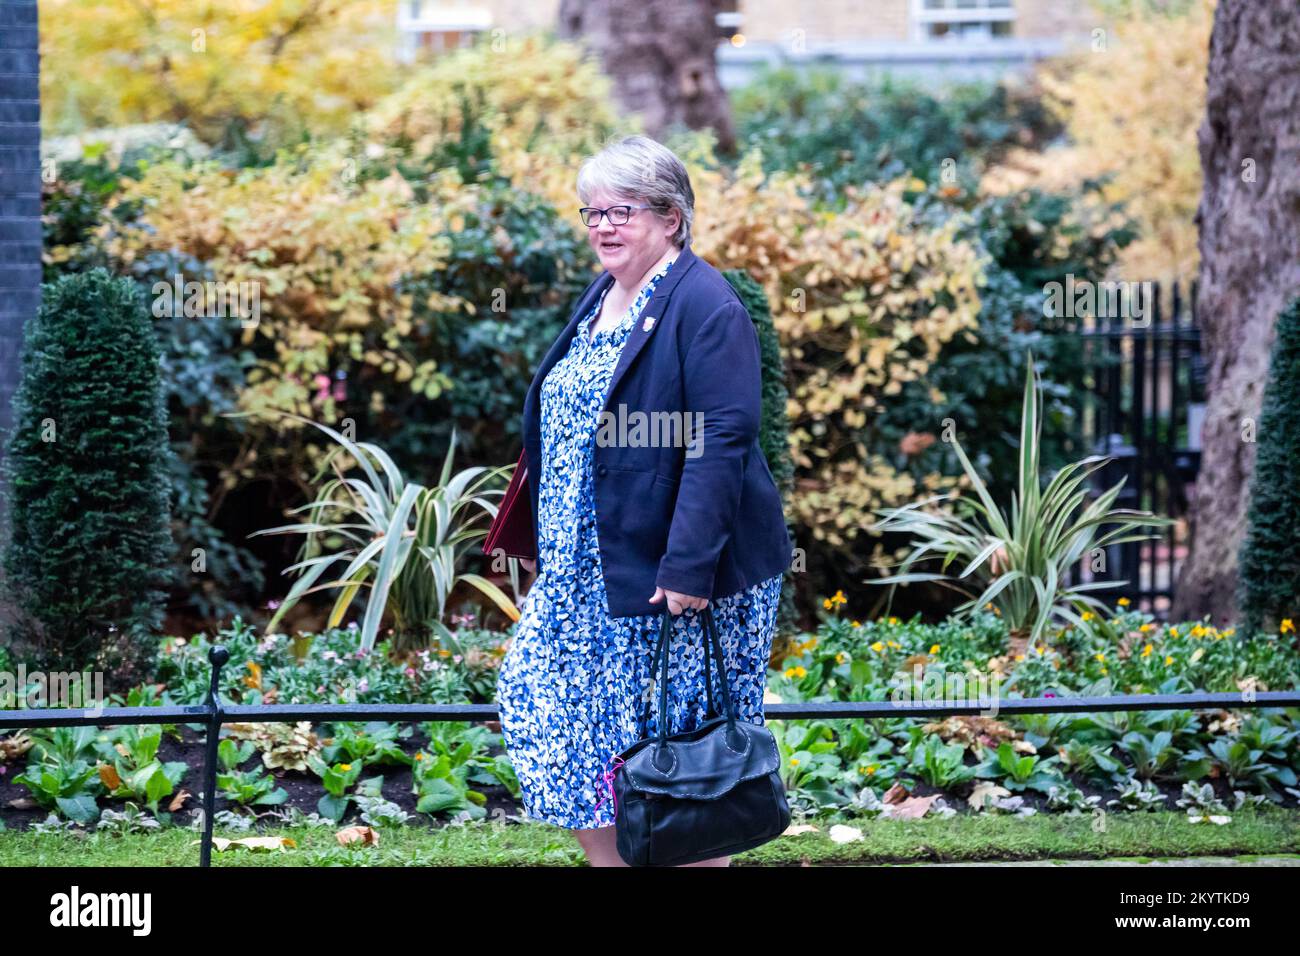 Thérèse Coffey, secrétaire d'État à l'Environnement, à l'alimentation et aux Affaires rurales, au numéro extérieur 10 Downing Street à Londres Banque D'Images